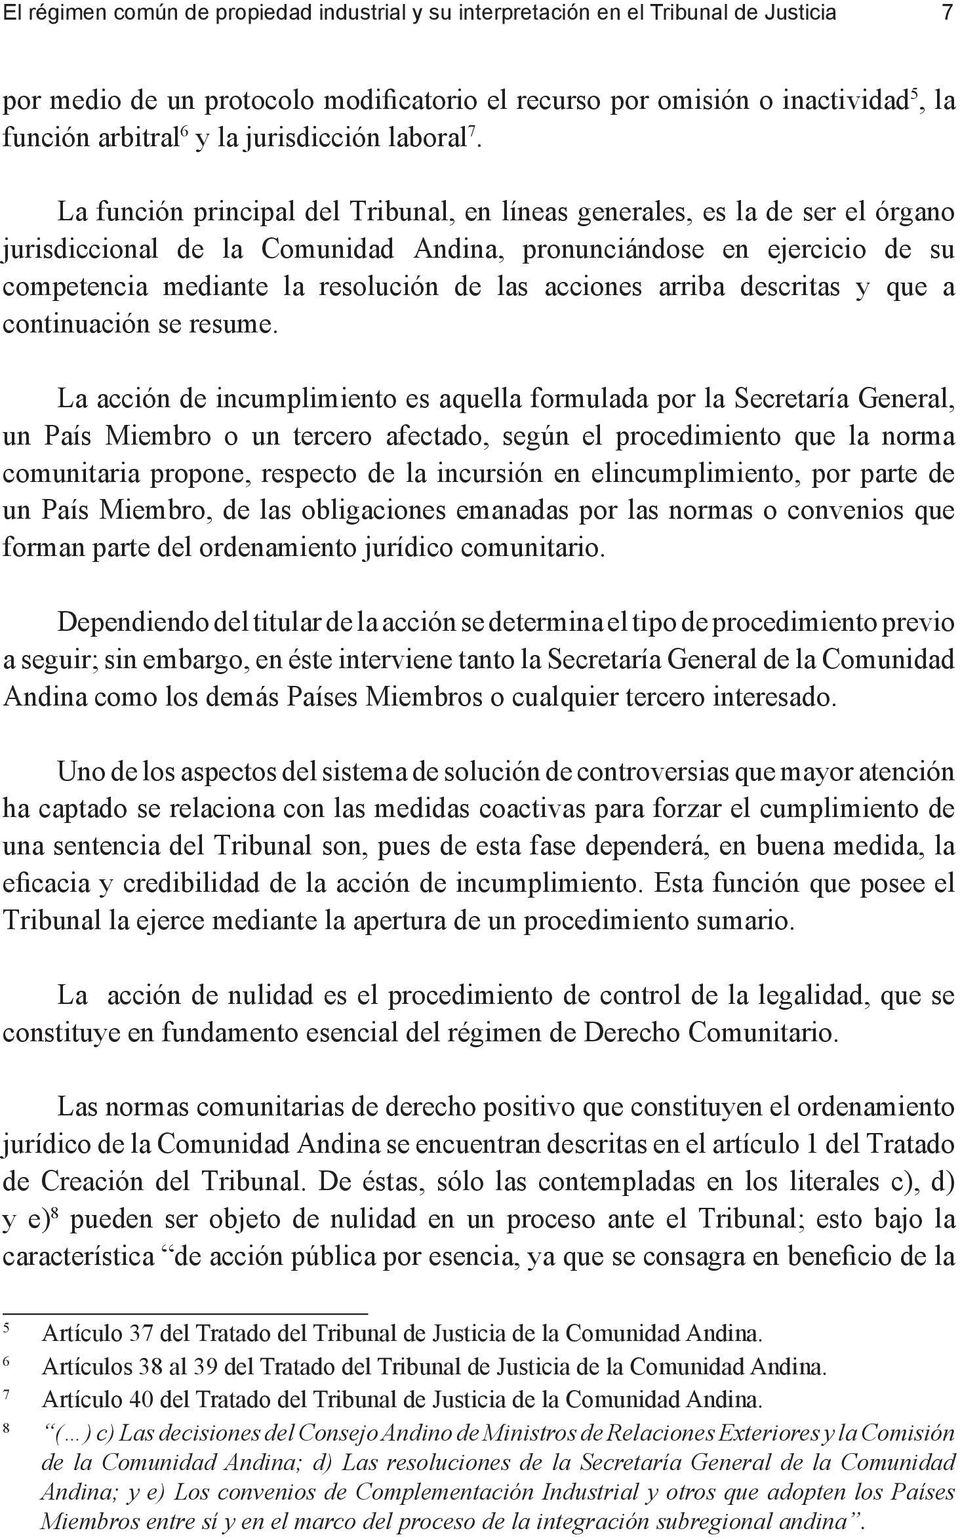 La función principal del Tribunal, en líneas generales, es la de ser el órgano jurisdiccional de la Comunidad Andina, pronunciándose en ejercicio de su competencia mediante la resolución de las